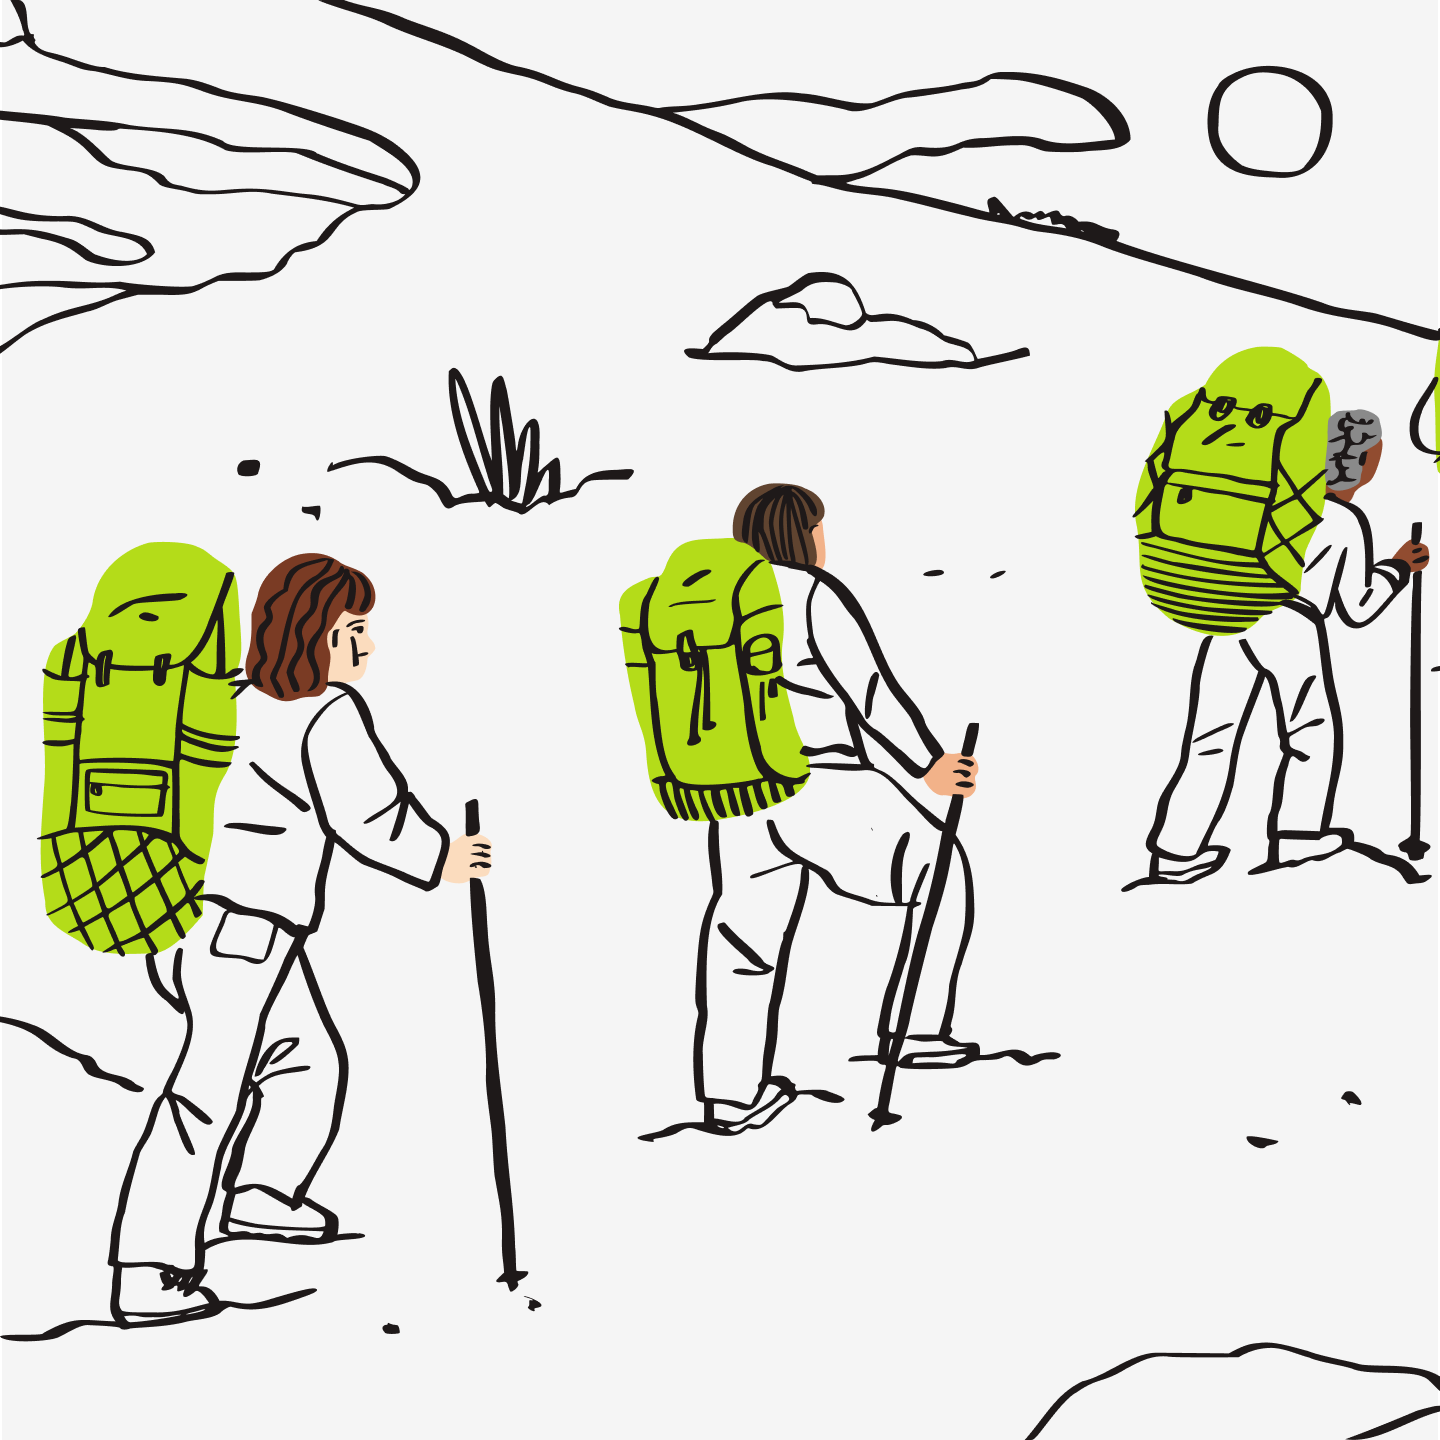 Uma ilustração de pessoas subindo uma montanha.